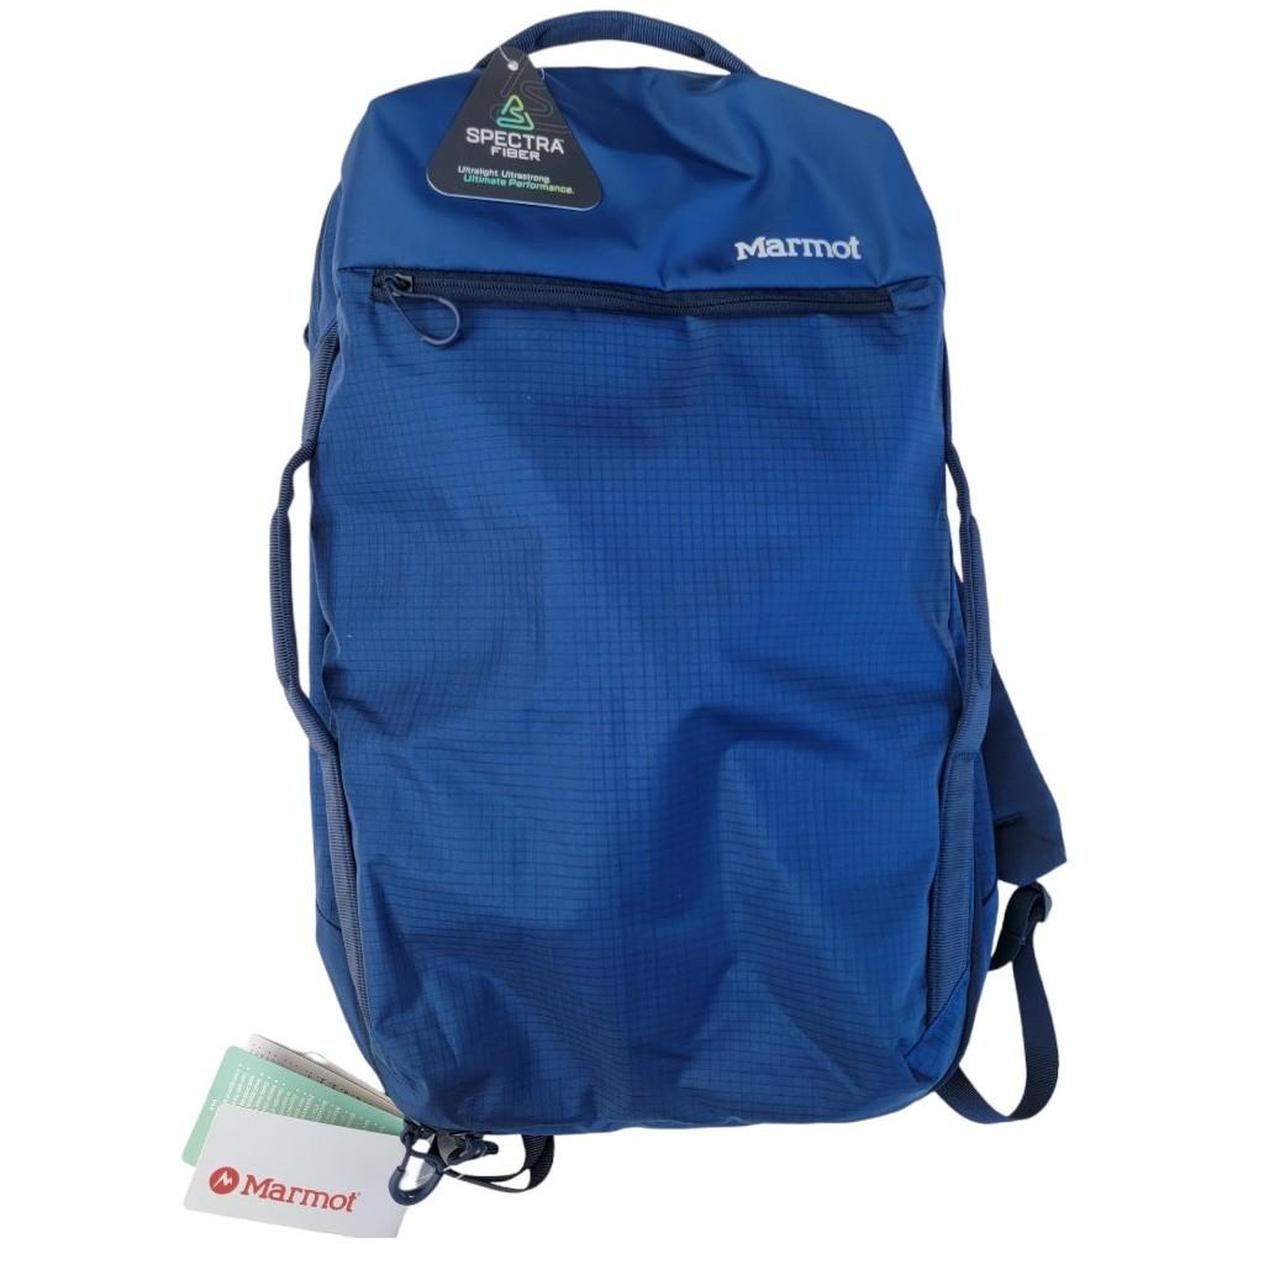 Marmot bouldering backpack. V10 pack. Slim, designed... - Depop